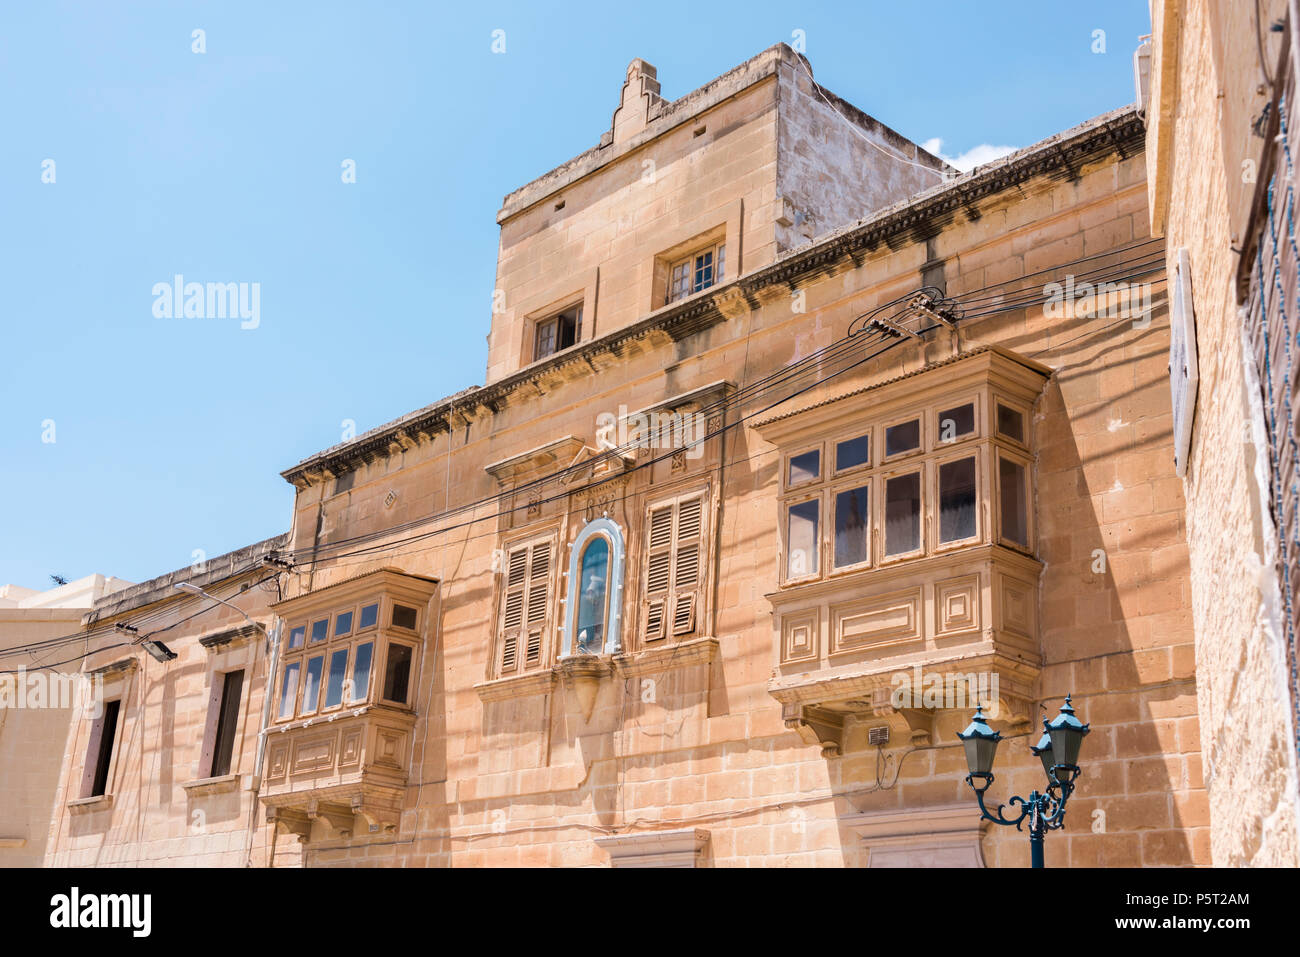 Tradizionali balconi in legno su entrambi i lati di un santuario mariano su un edificio in Ghajnsielem, Gozo, Malta Foto Stock